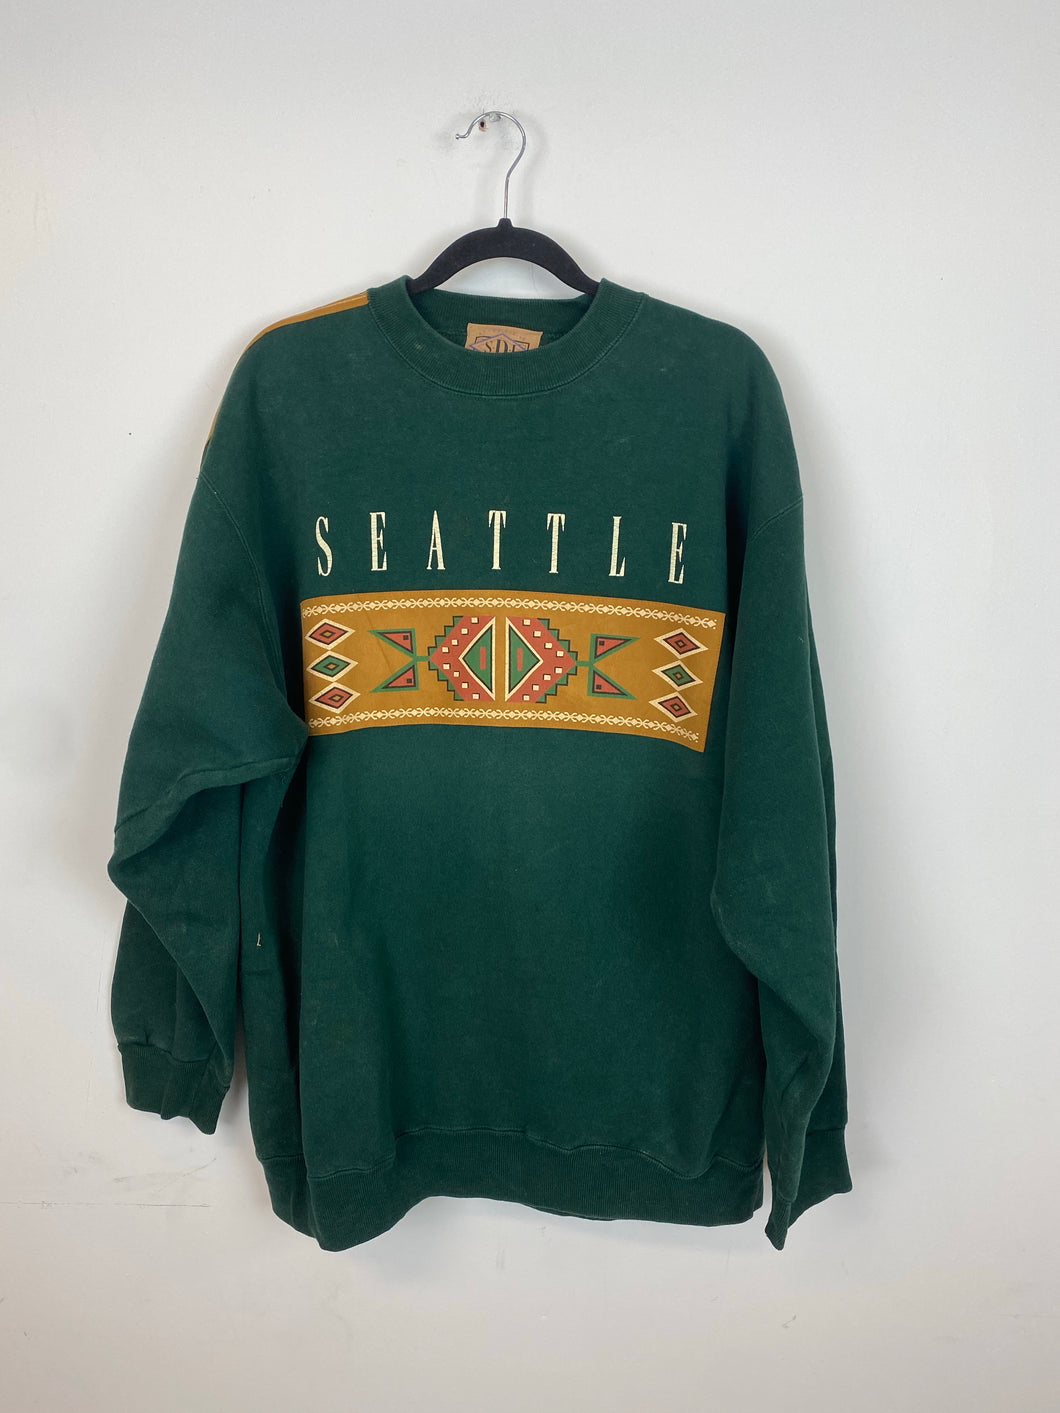 Vintage Seattle crewneck - L